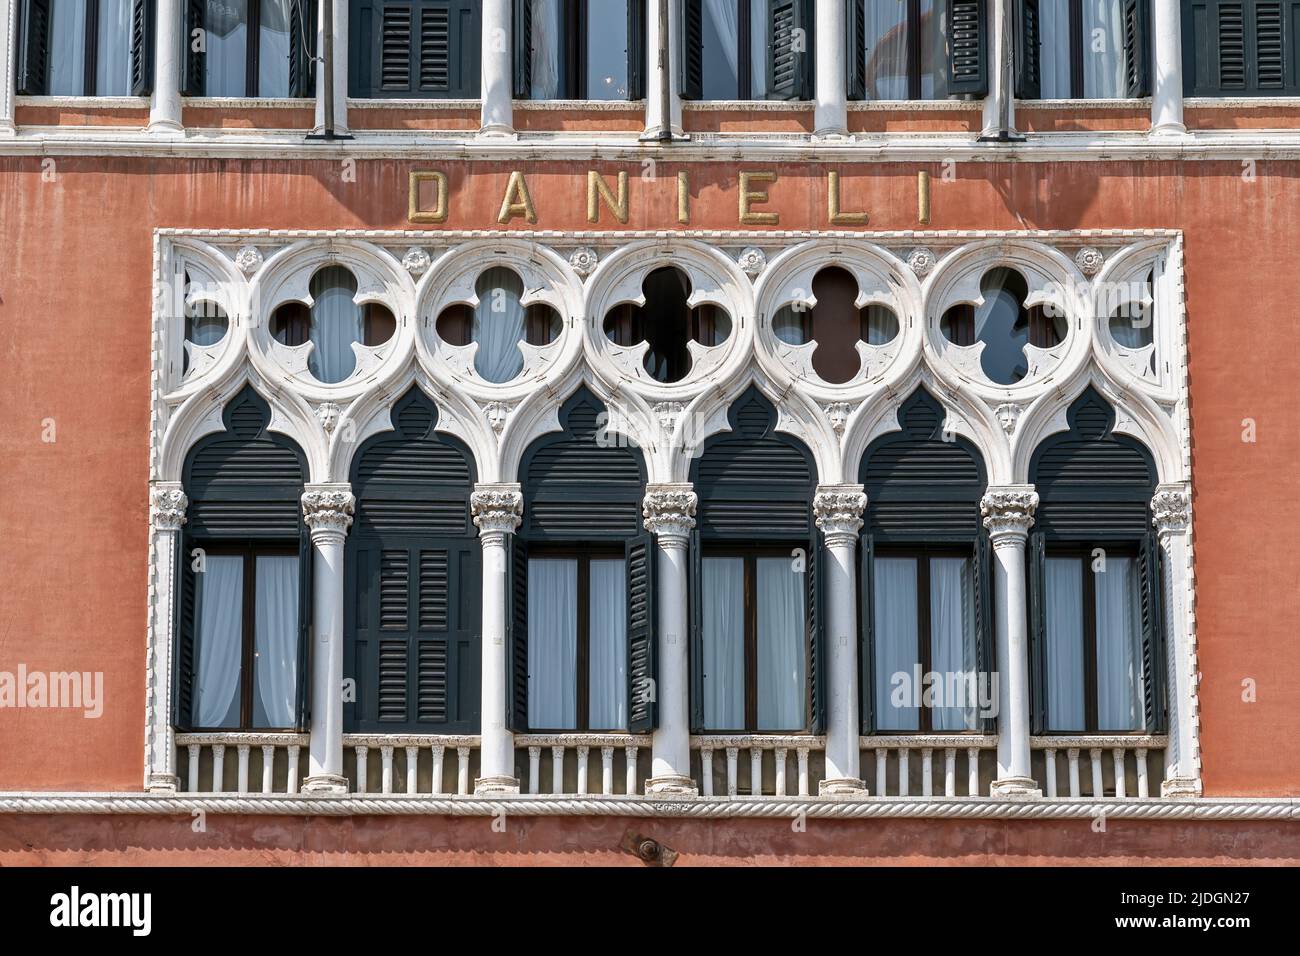 Hôtel Danieli, luxe cinq étoiles, mondialement connu. Façade de style gothique vénitien. Venise, Italie, Europe, UE. Nom du panneau de l'hôtel. Gros plan. Banque D'Images